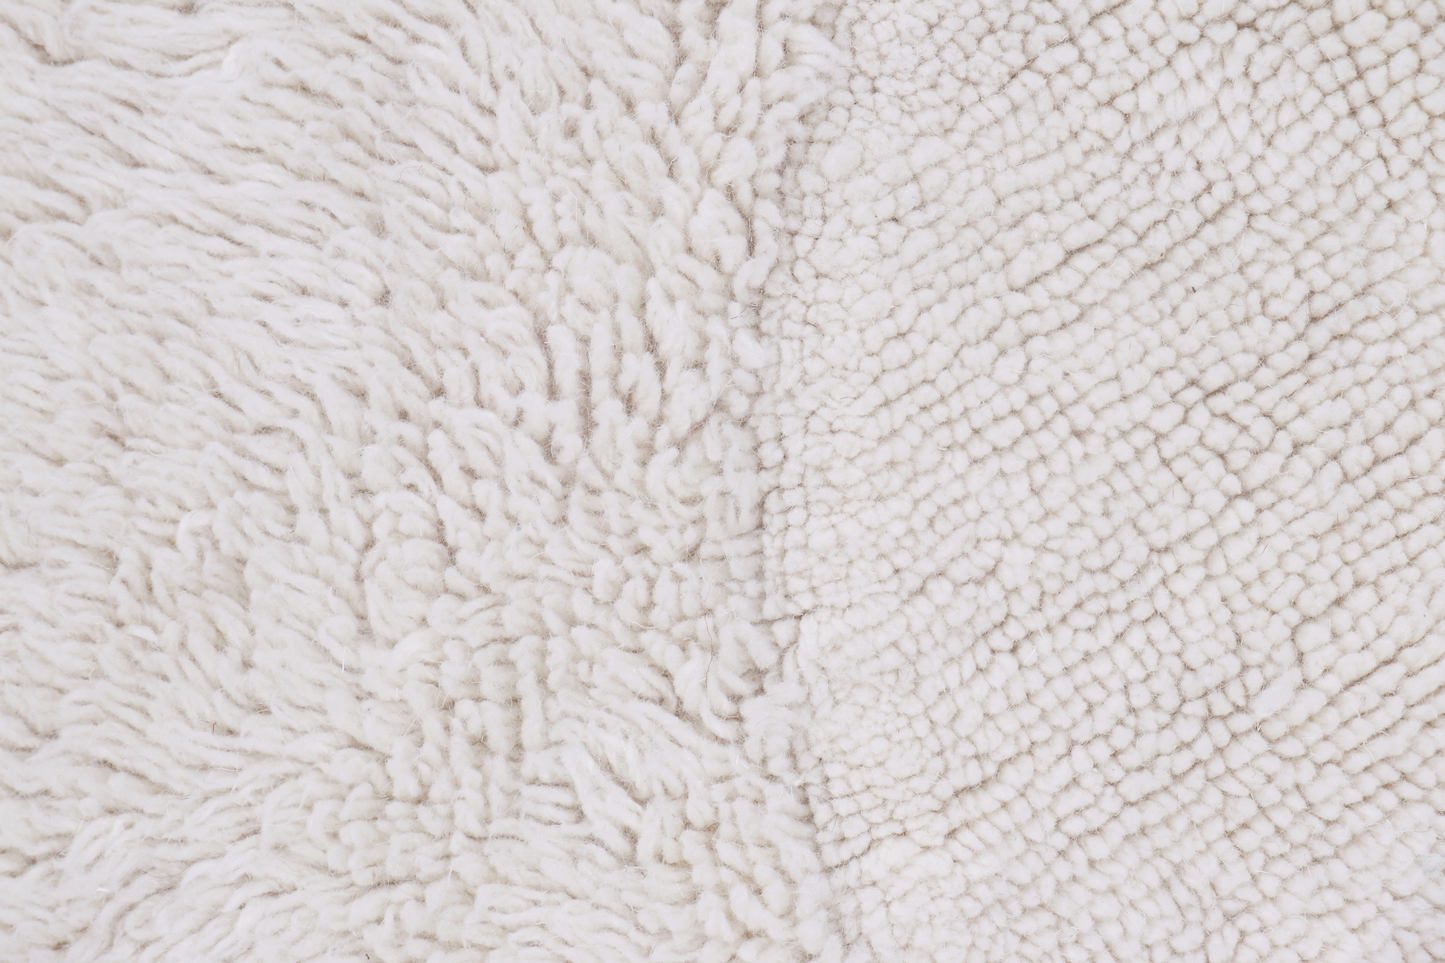 Woolable rug – arctic circle round sheep white carpet